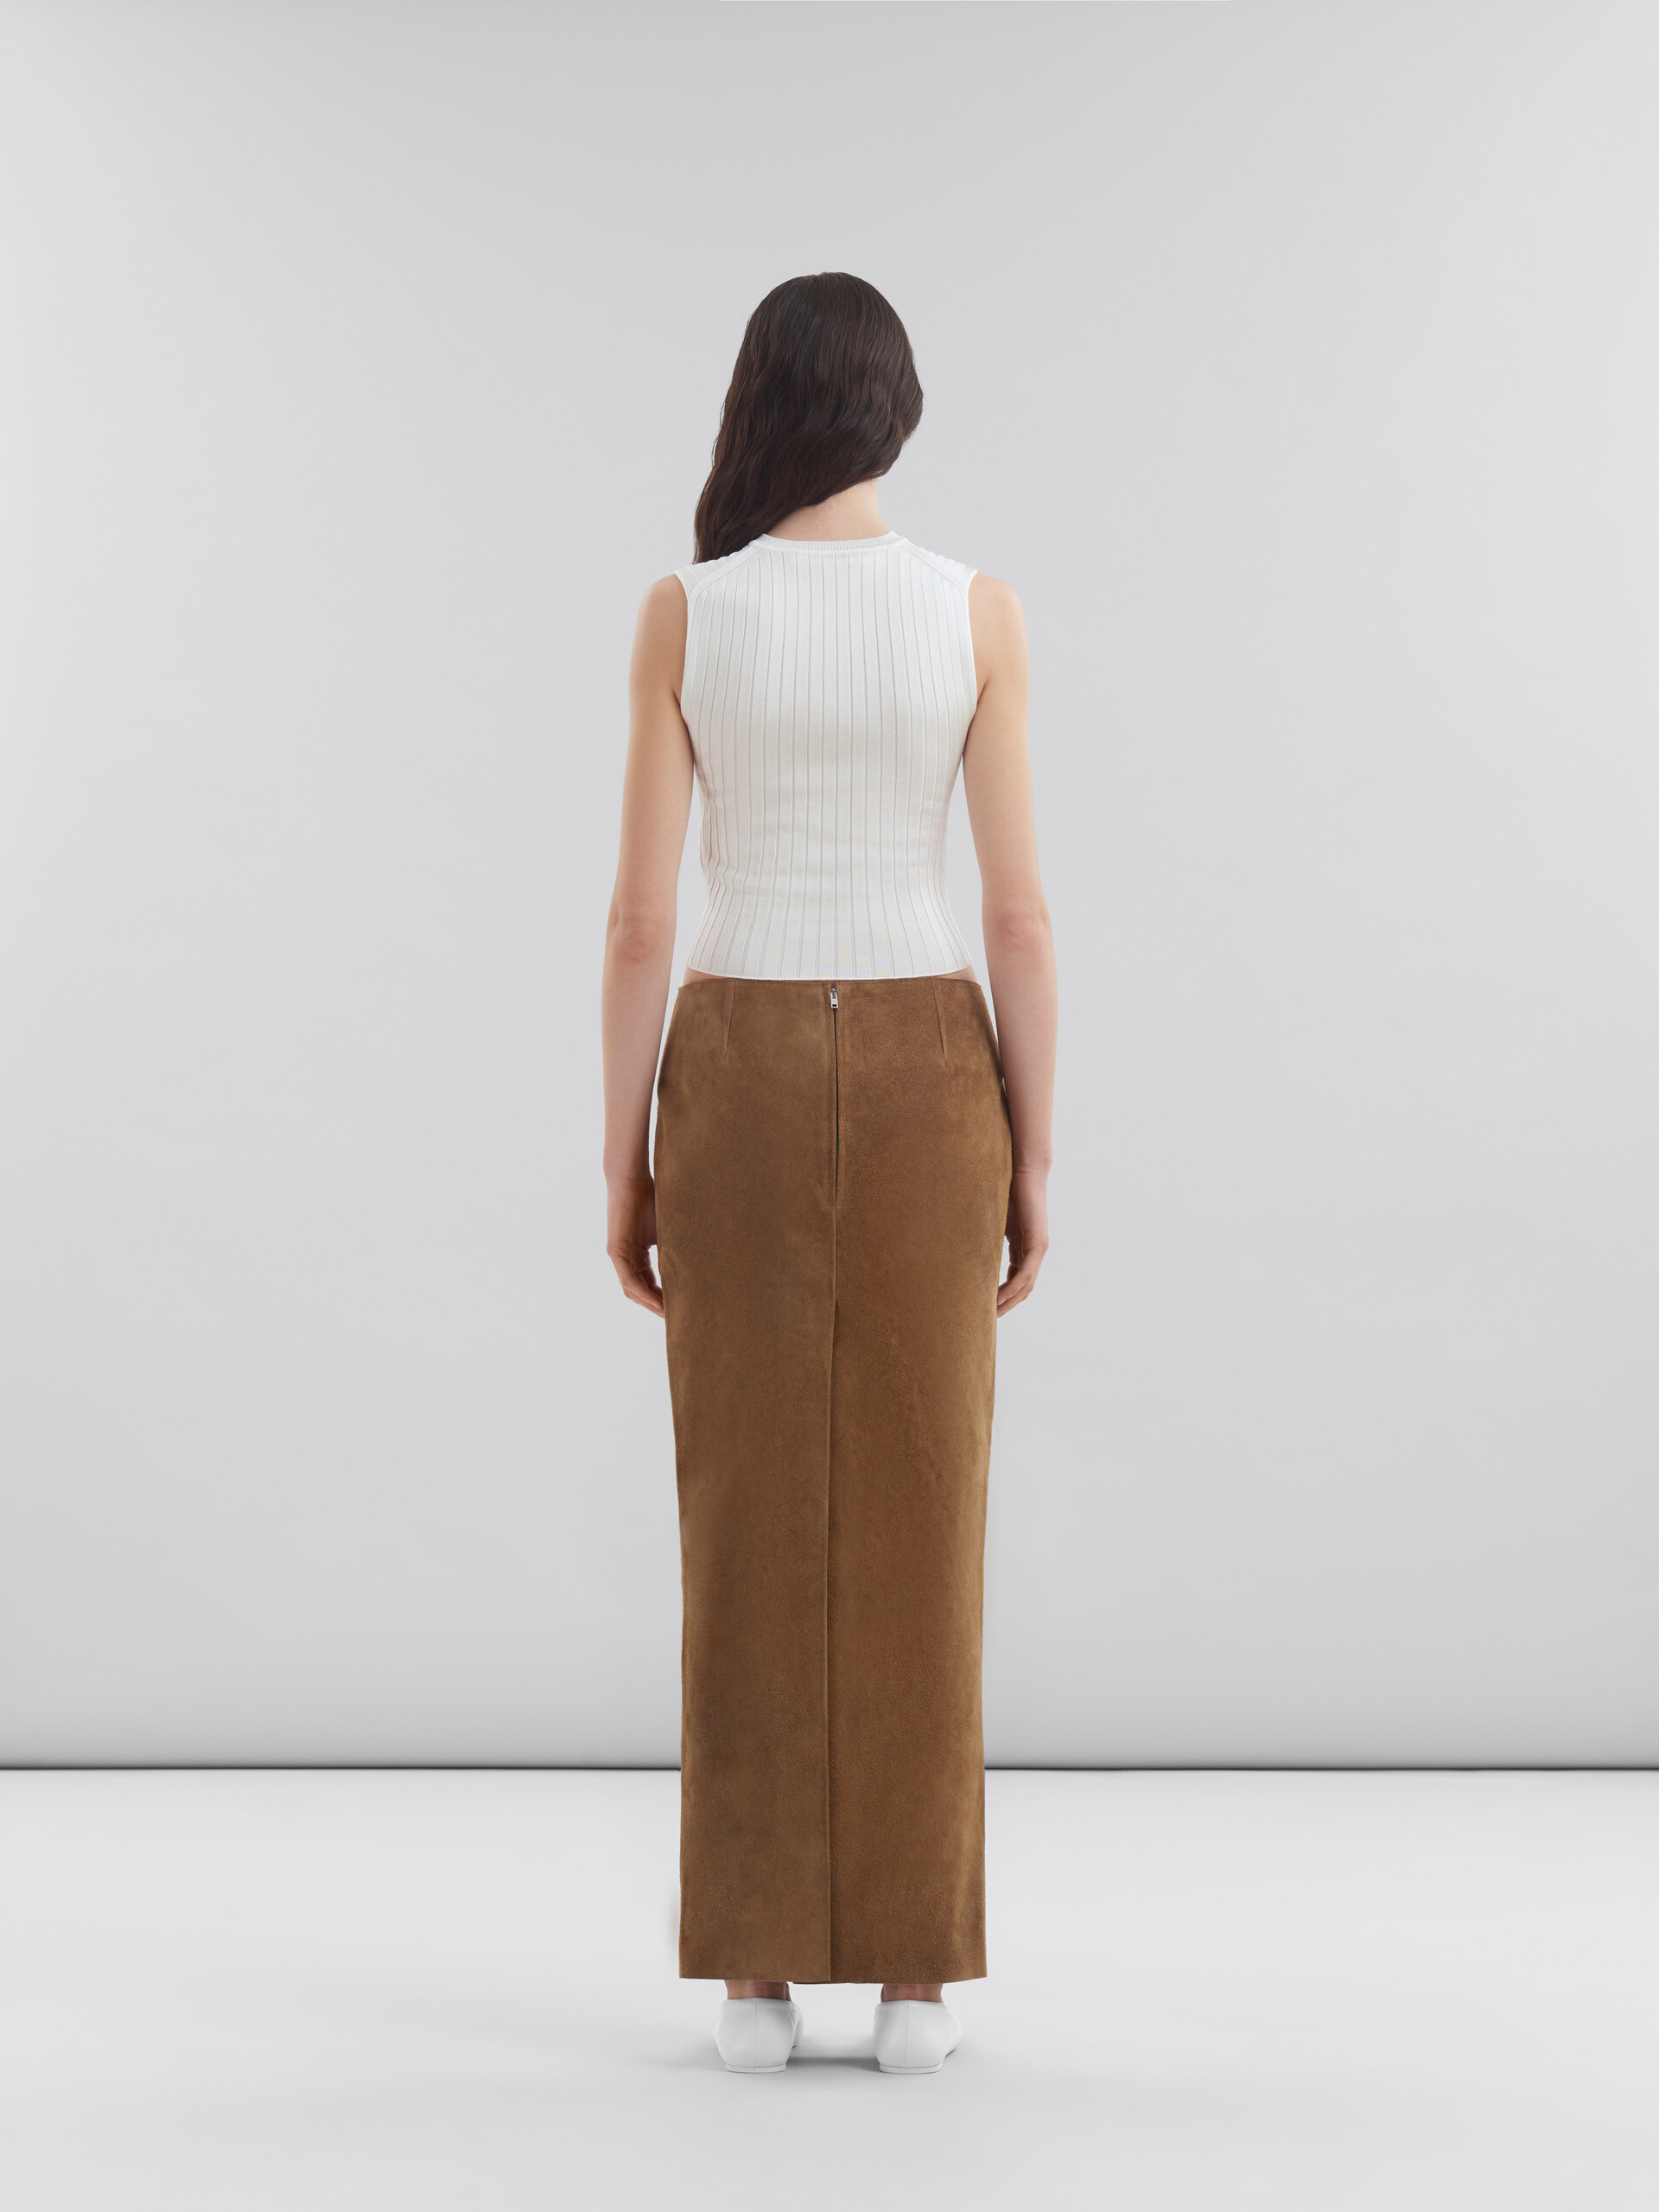 ブラウン スエードレザー製 ペンシルスカート - スカート - Image 3